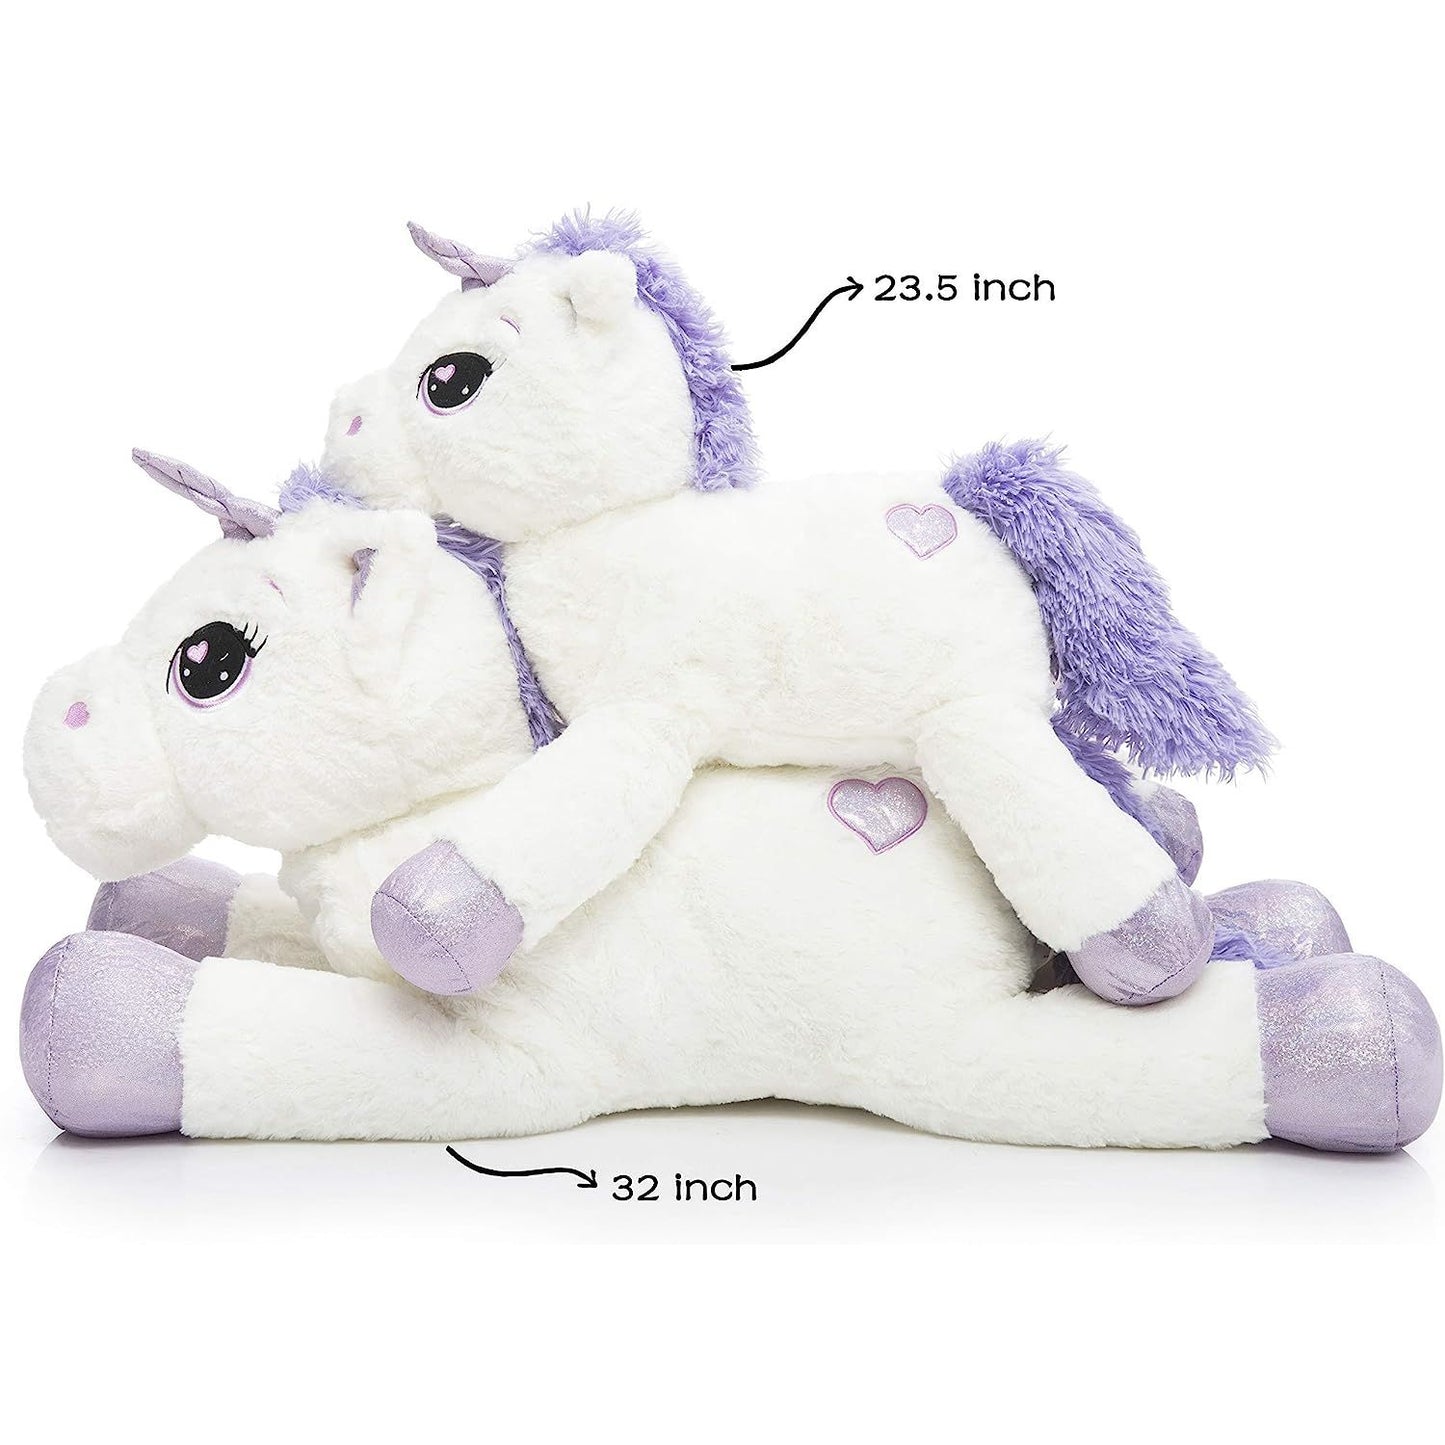 Giant Unicorn Plush Toy, Pink/White, 24/32 Inches - MorisMos Plush Toys